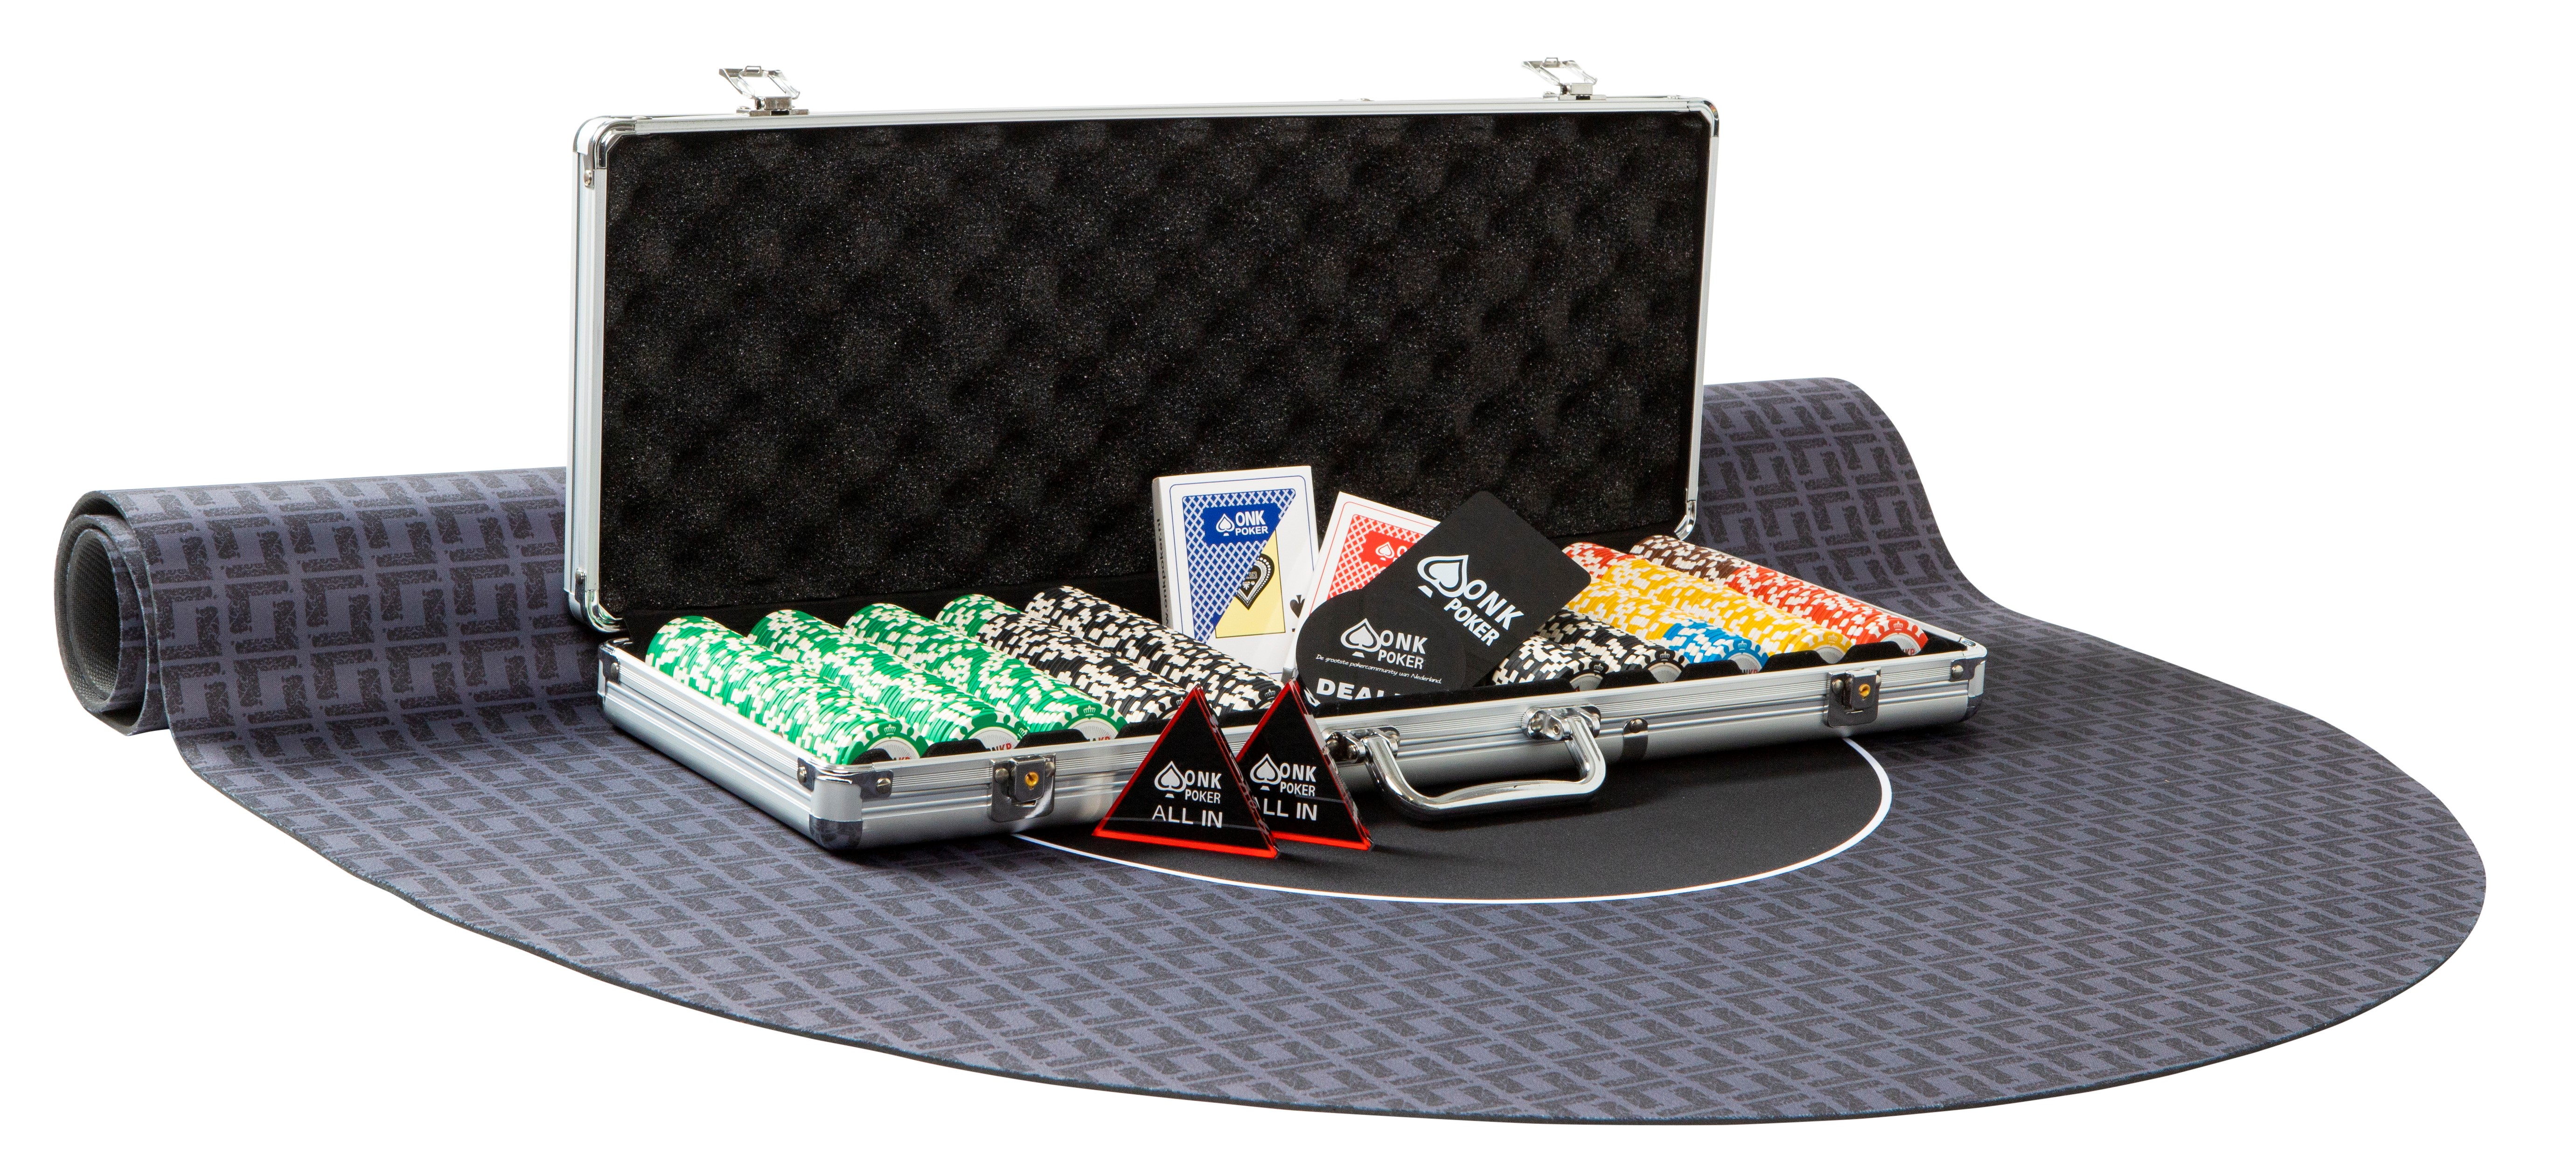 De Kamer riem Teken een foto Pokerkoffer kopen ✓ Complete koffer ONK Poker ✓ | ONK Poker